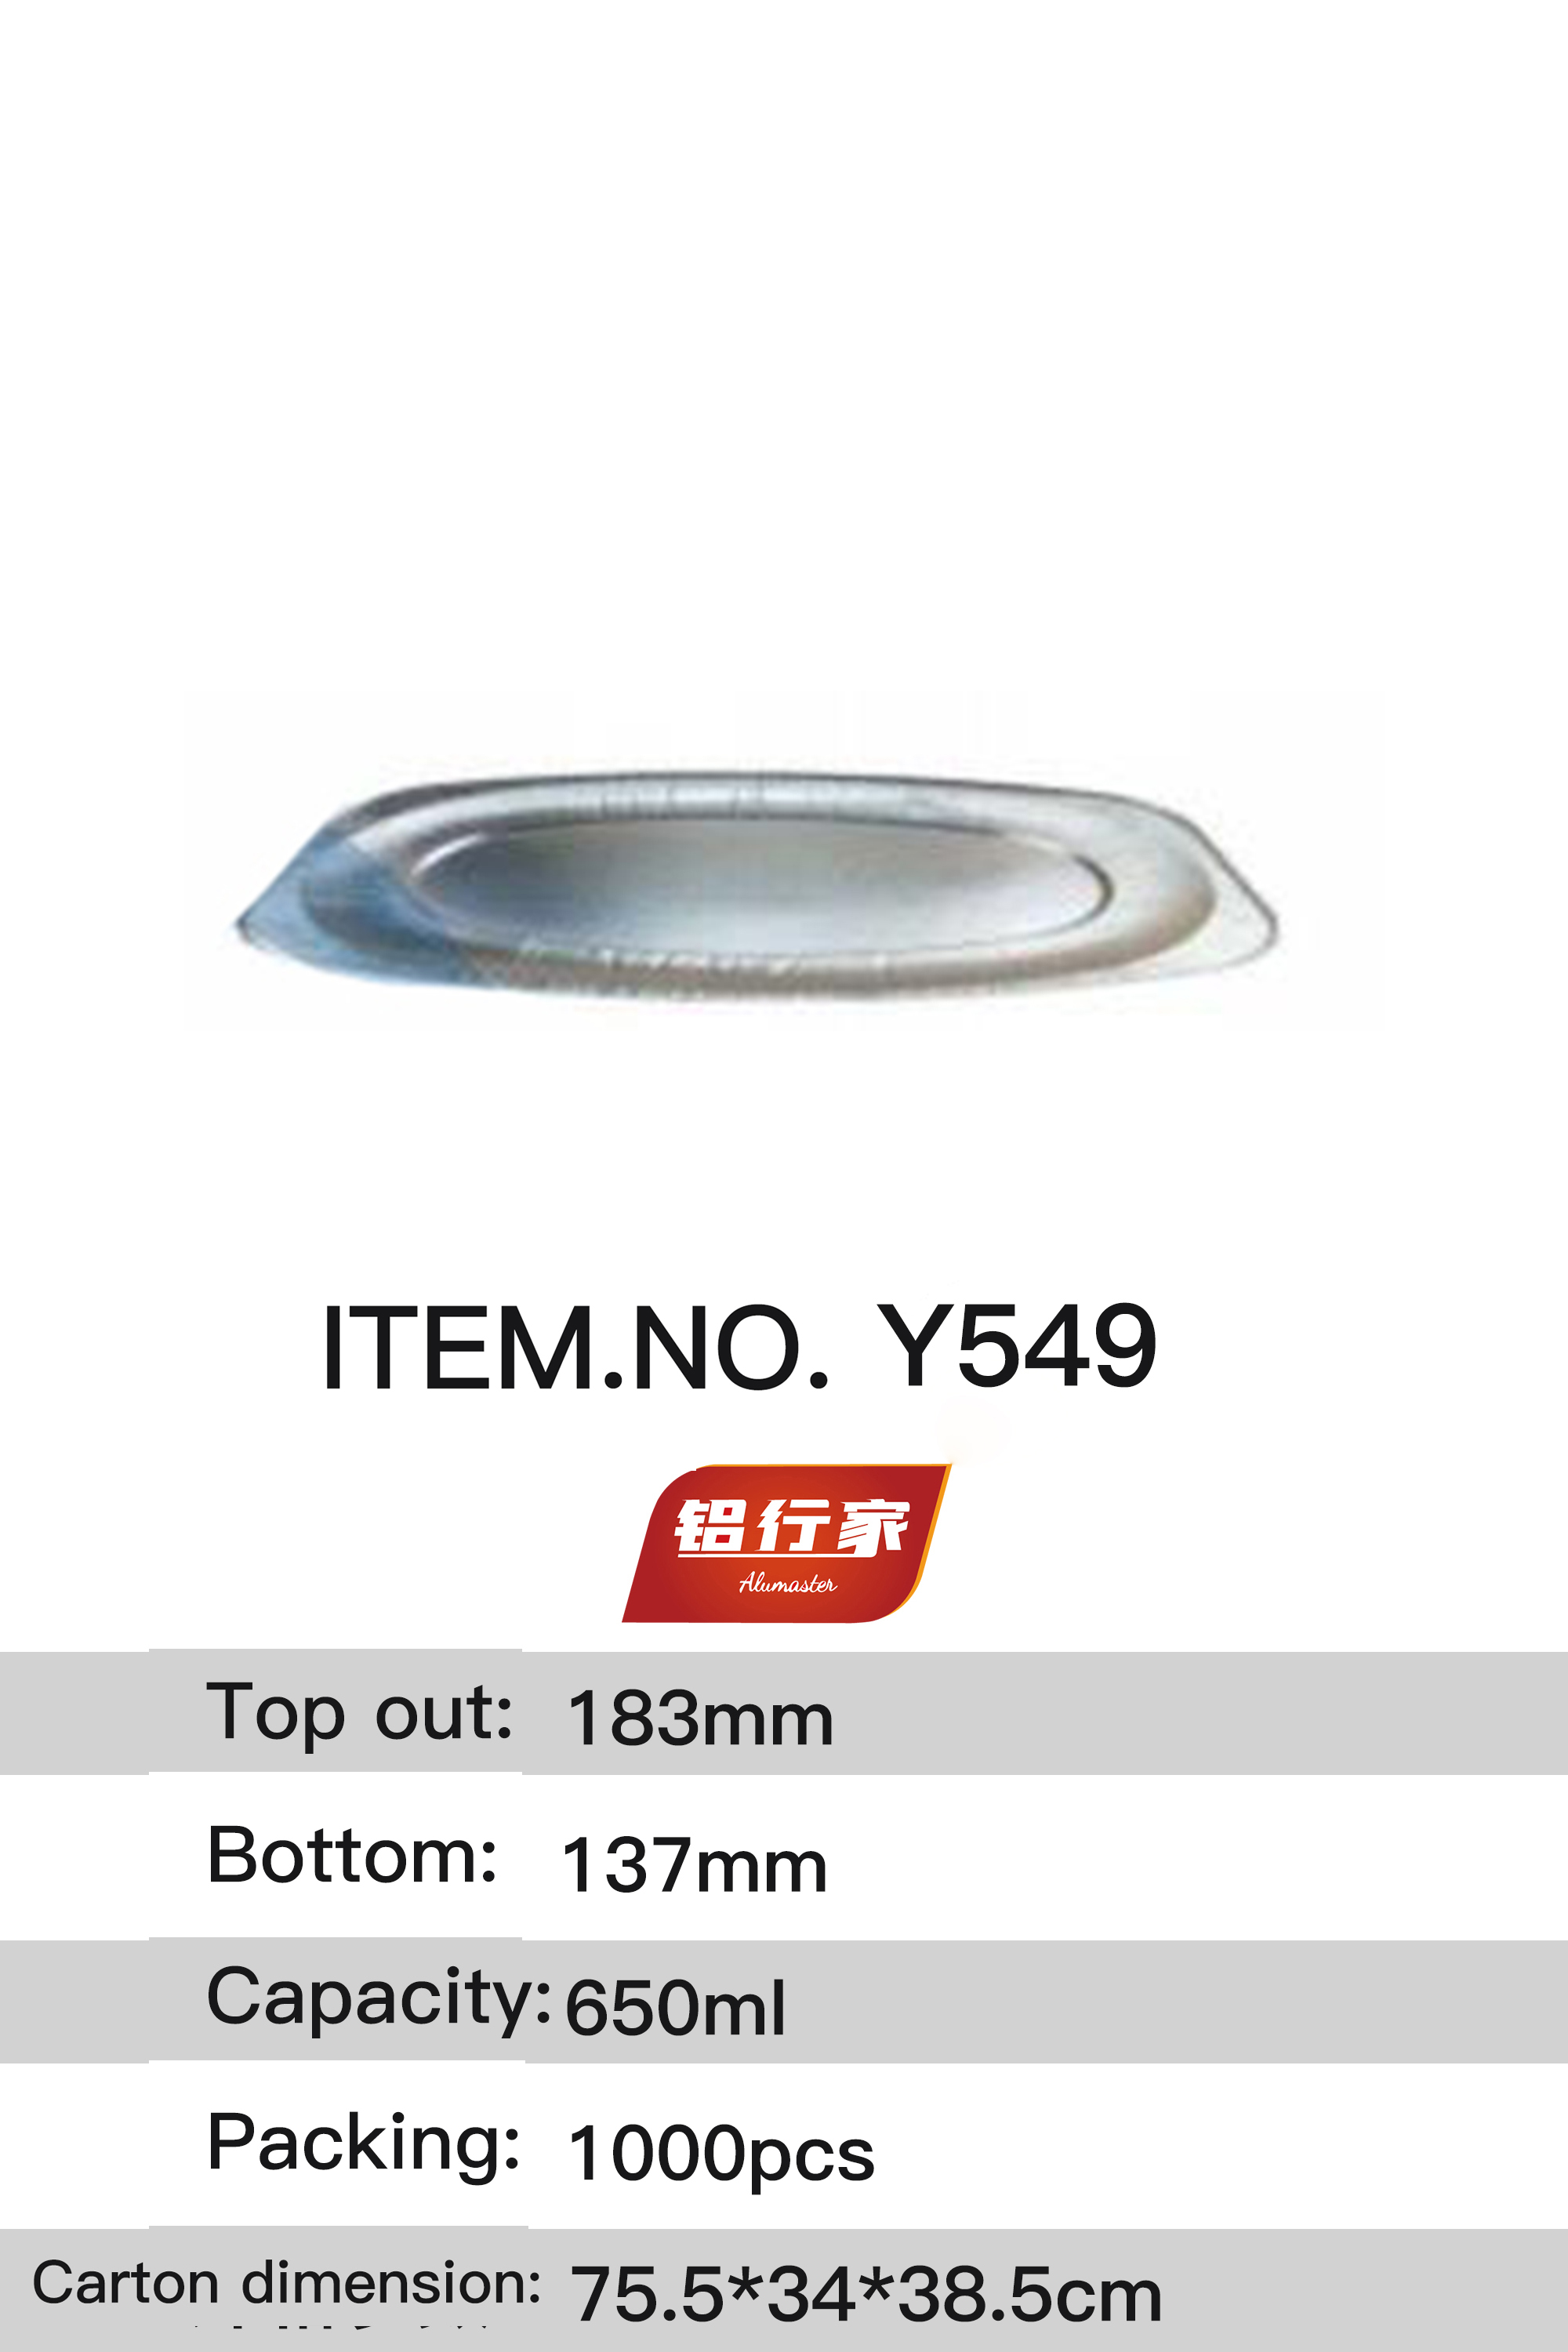 铝行家铝箔餐盒Y549